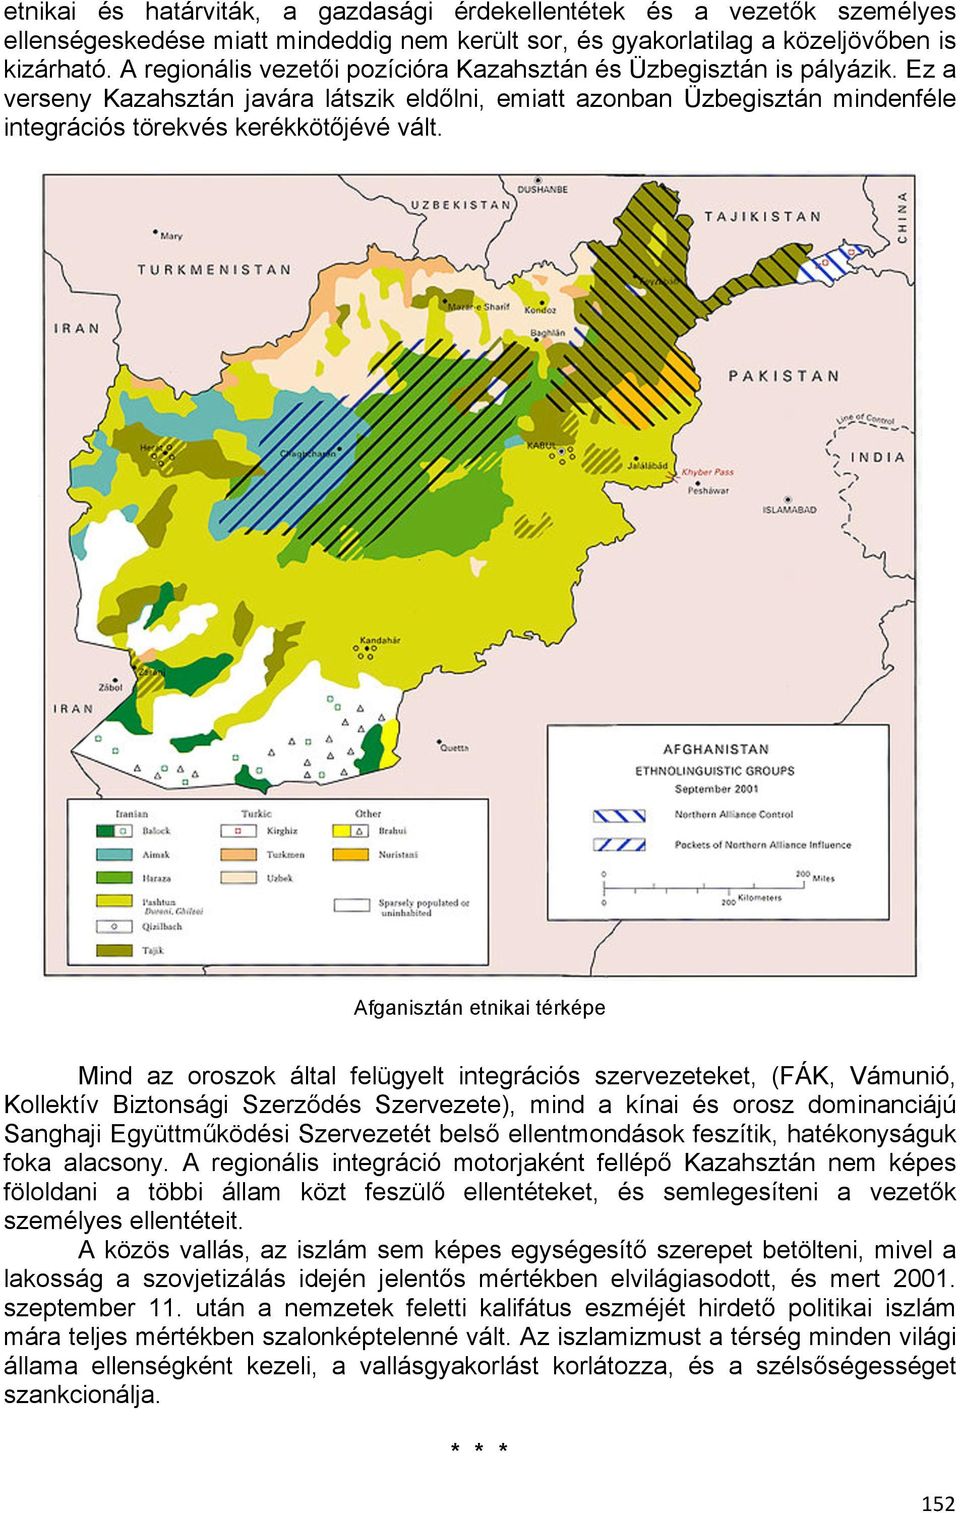 Afganisztán etnikai térképe Mind az oroszok által felügyelt integrációs szervezeteket, (FÁK, Vámunió, Kollektív Biztonsági Szerződés Szervezete), mind a kínai és orosz dominanciájú Sanghaji